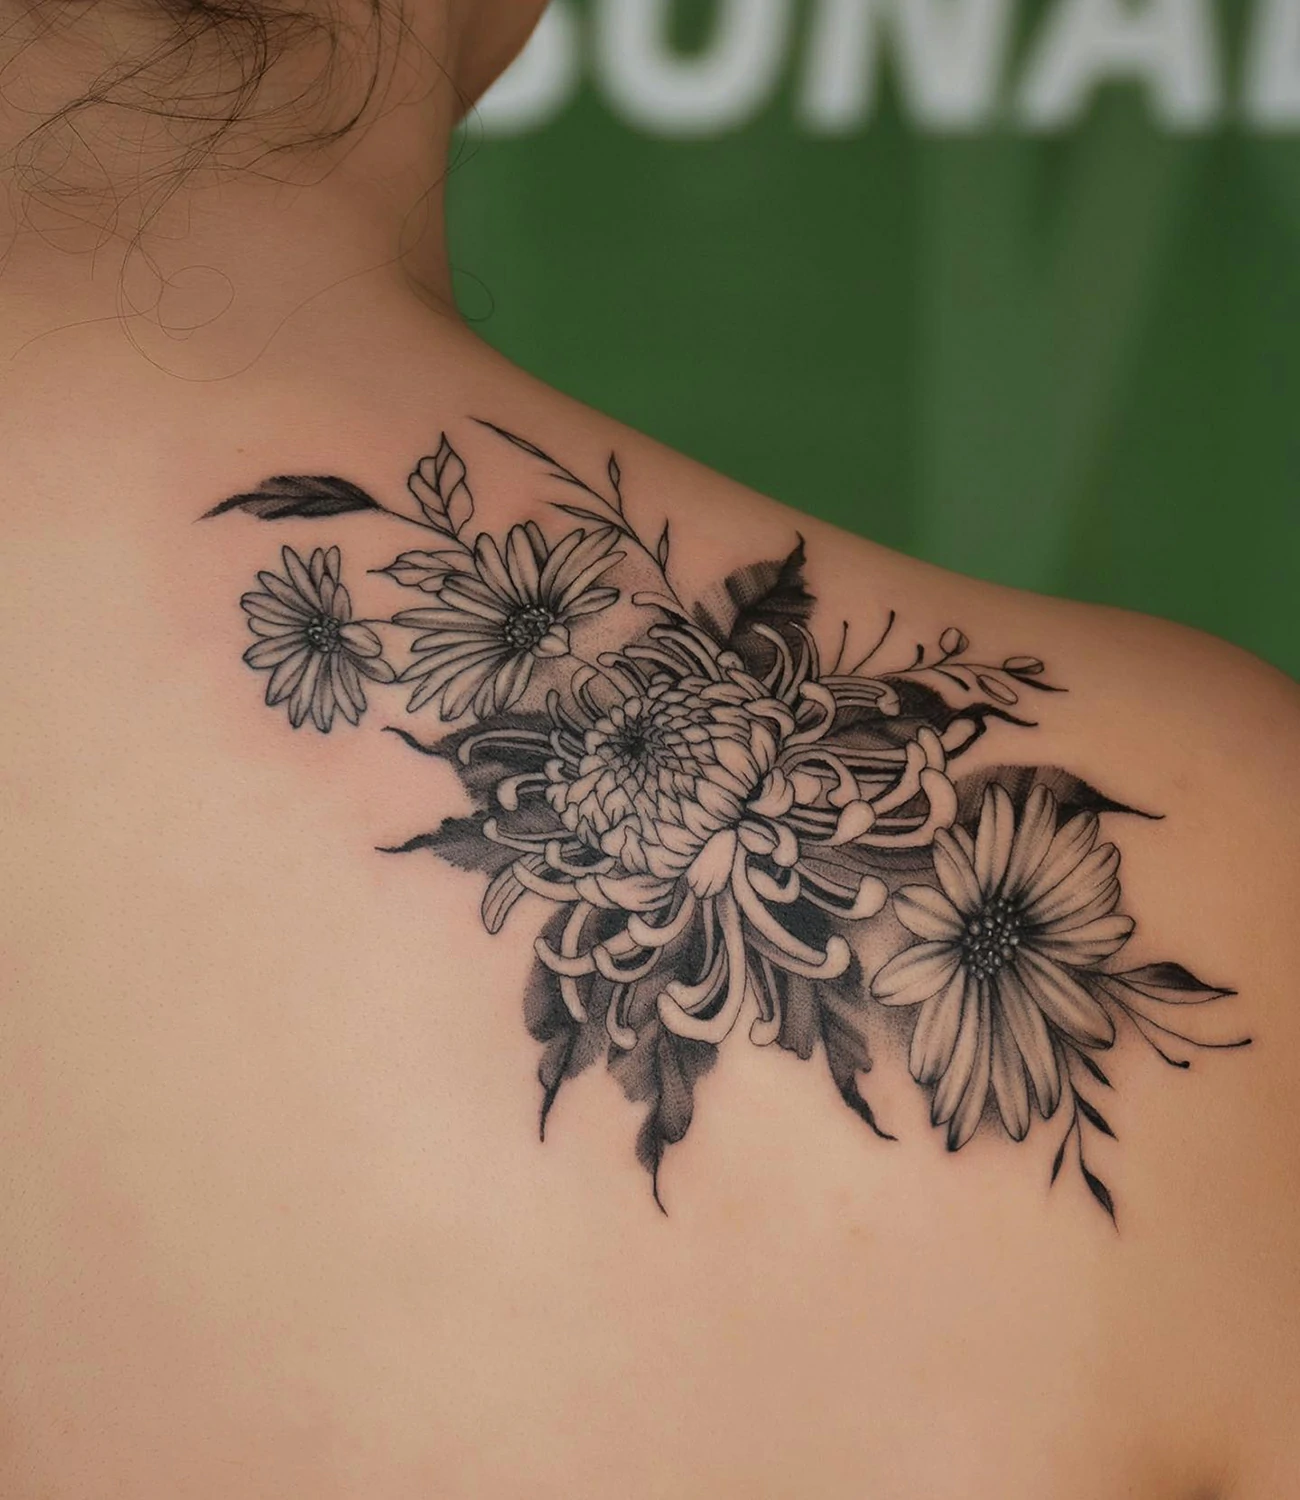 Daisy and Chrysanthemum Tattoo #chrysanthemumtattoo